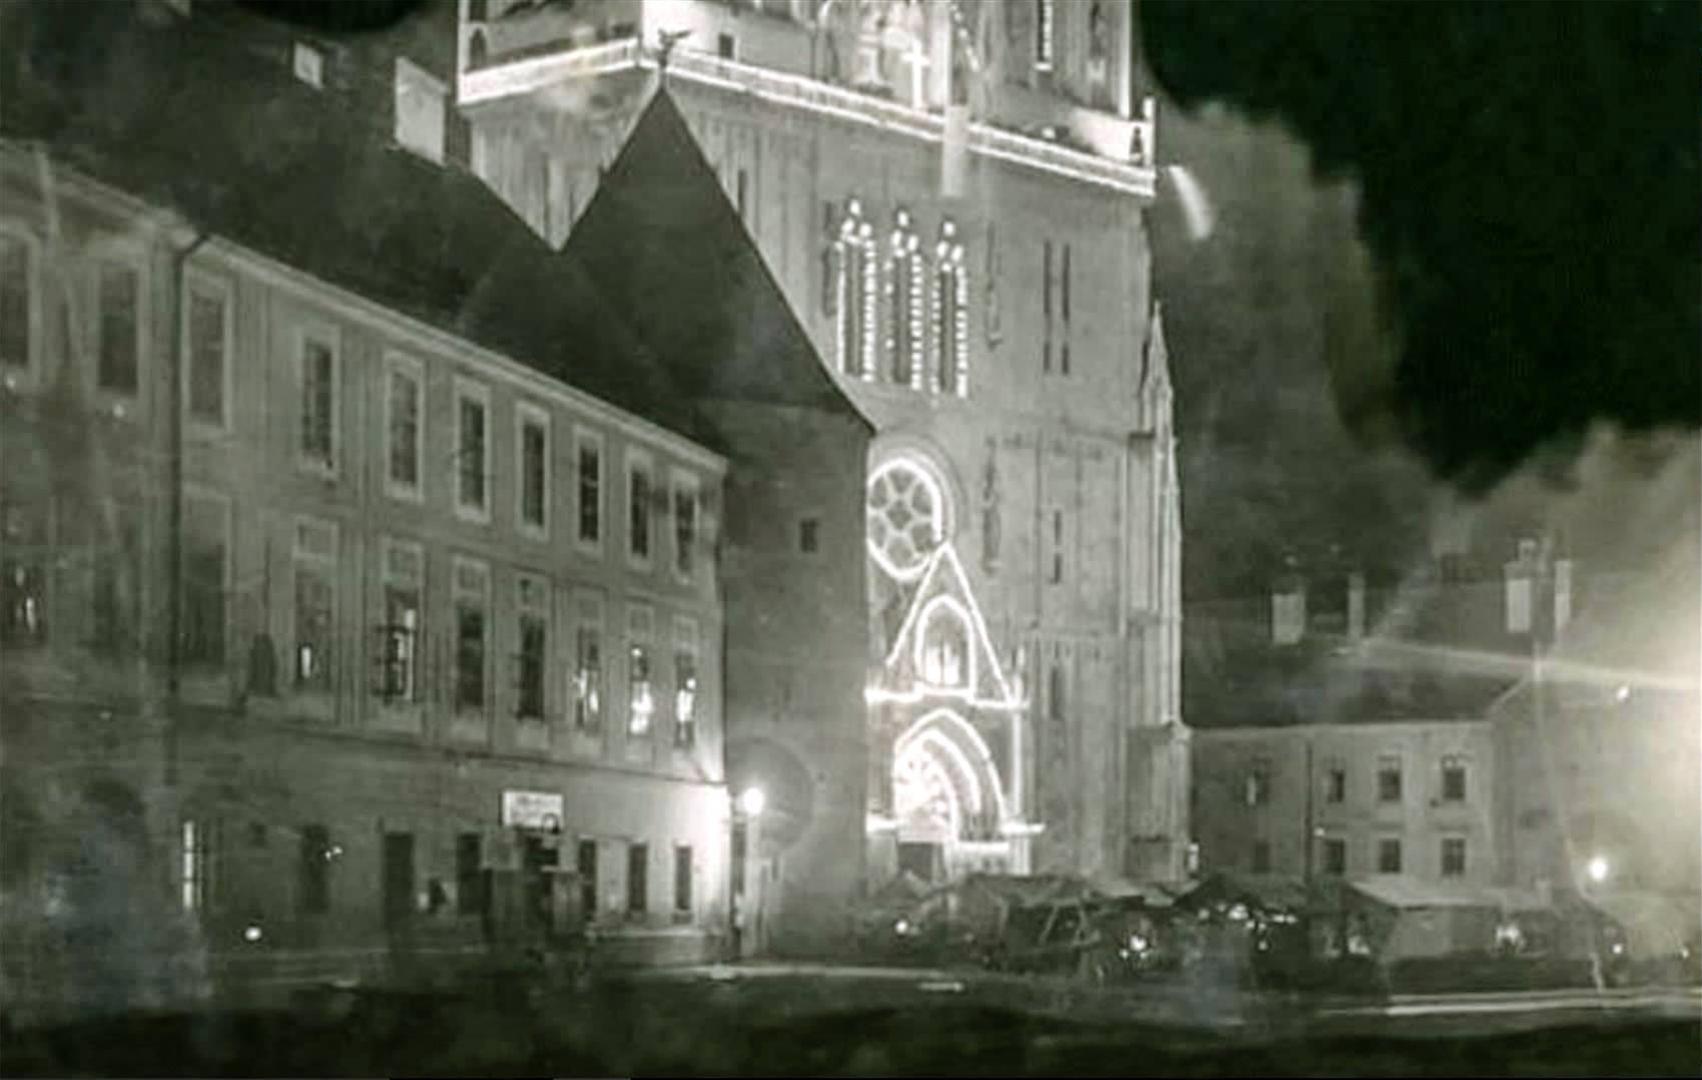 Katedrala, oko 1930.